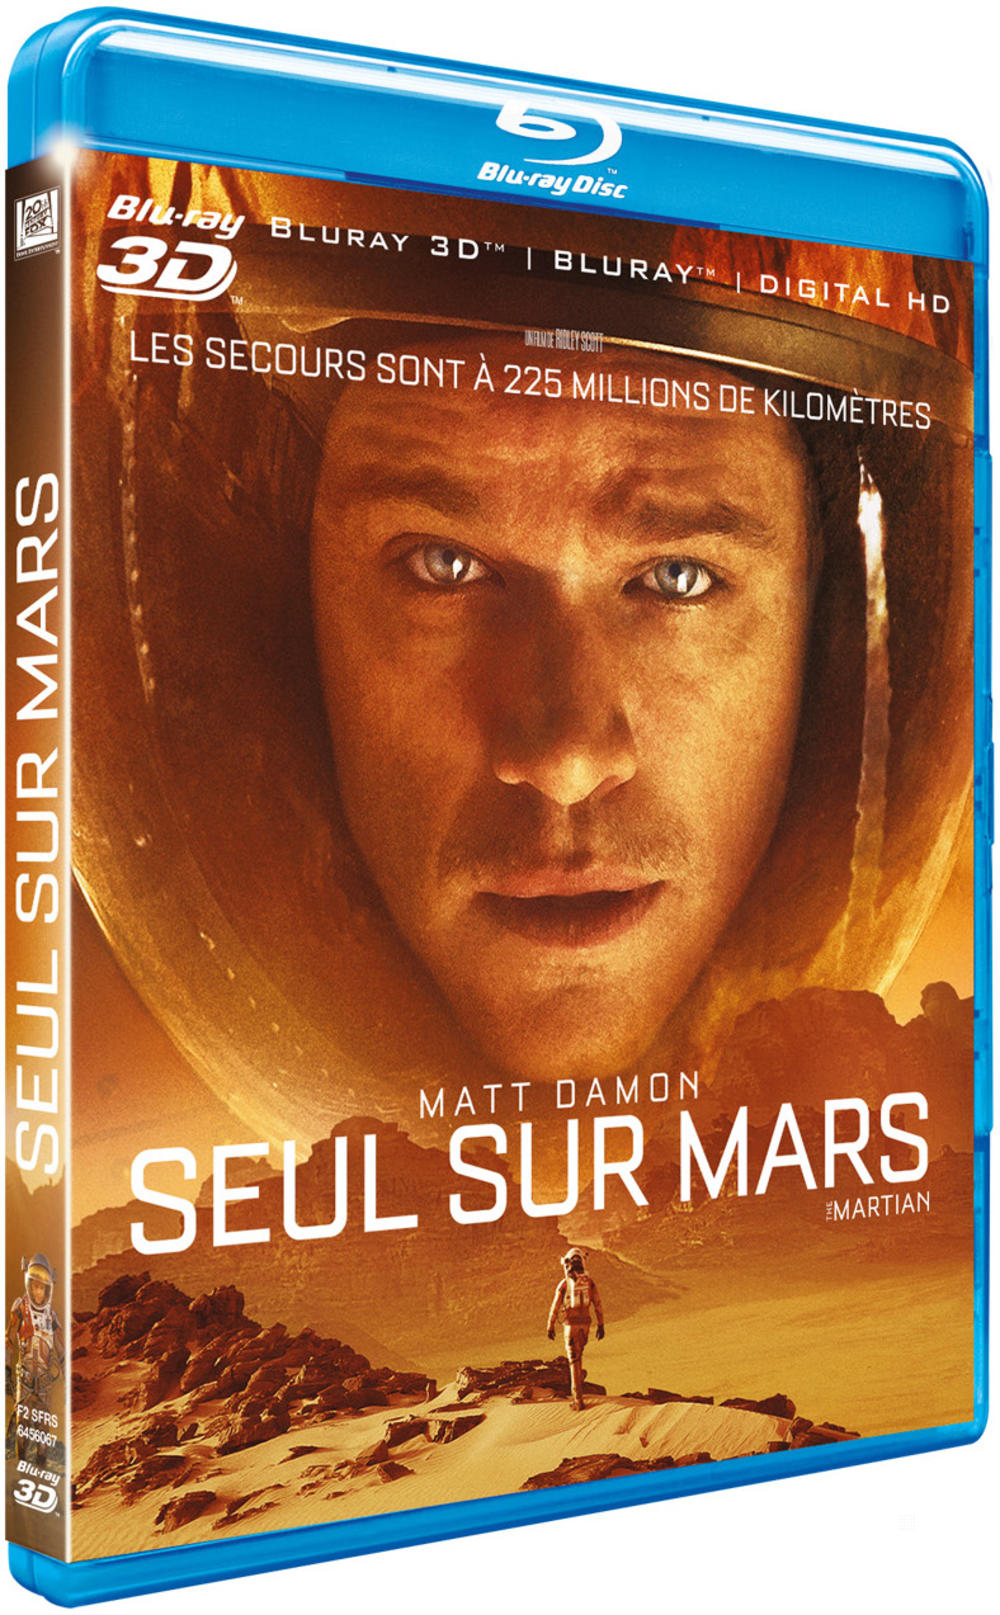 Seul sur Mars - Blu-ray 3D + Blu-ray 2D + Digital HD